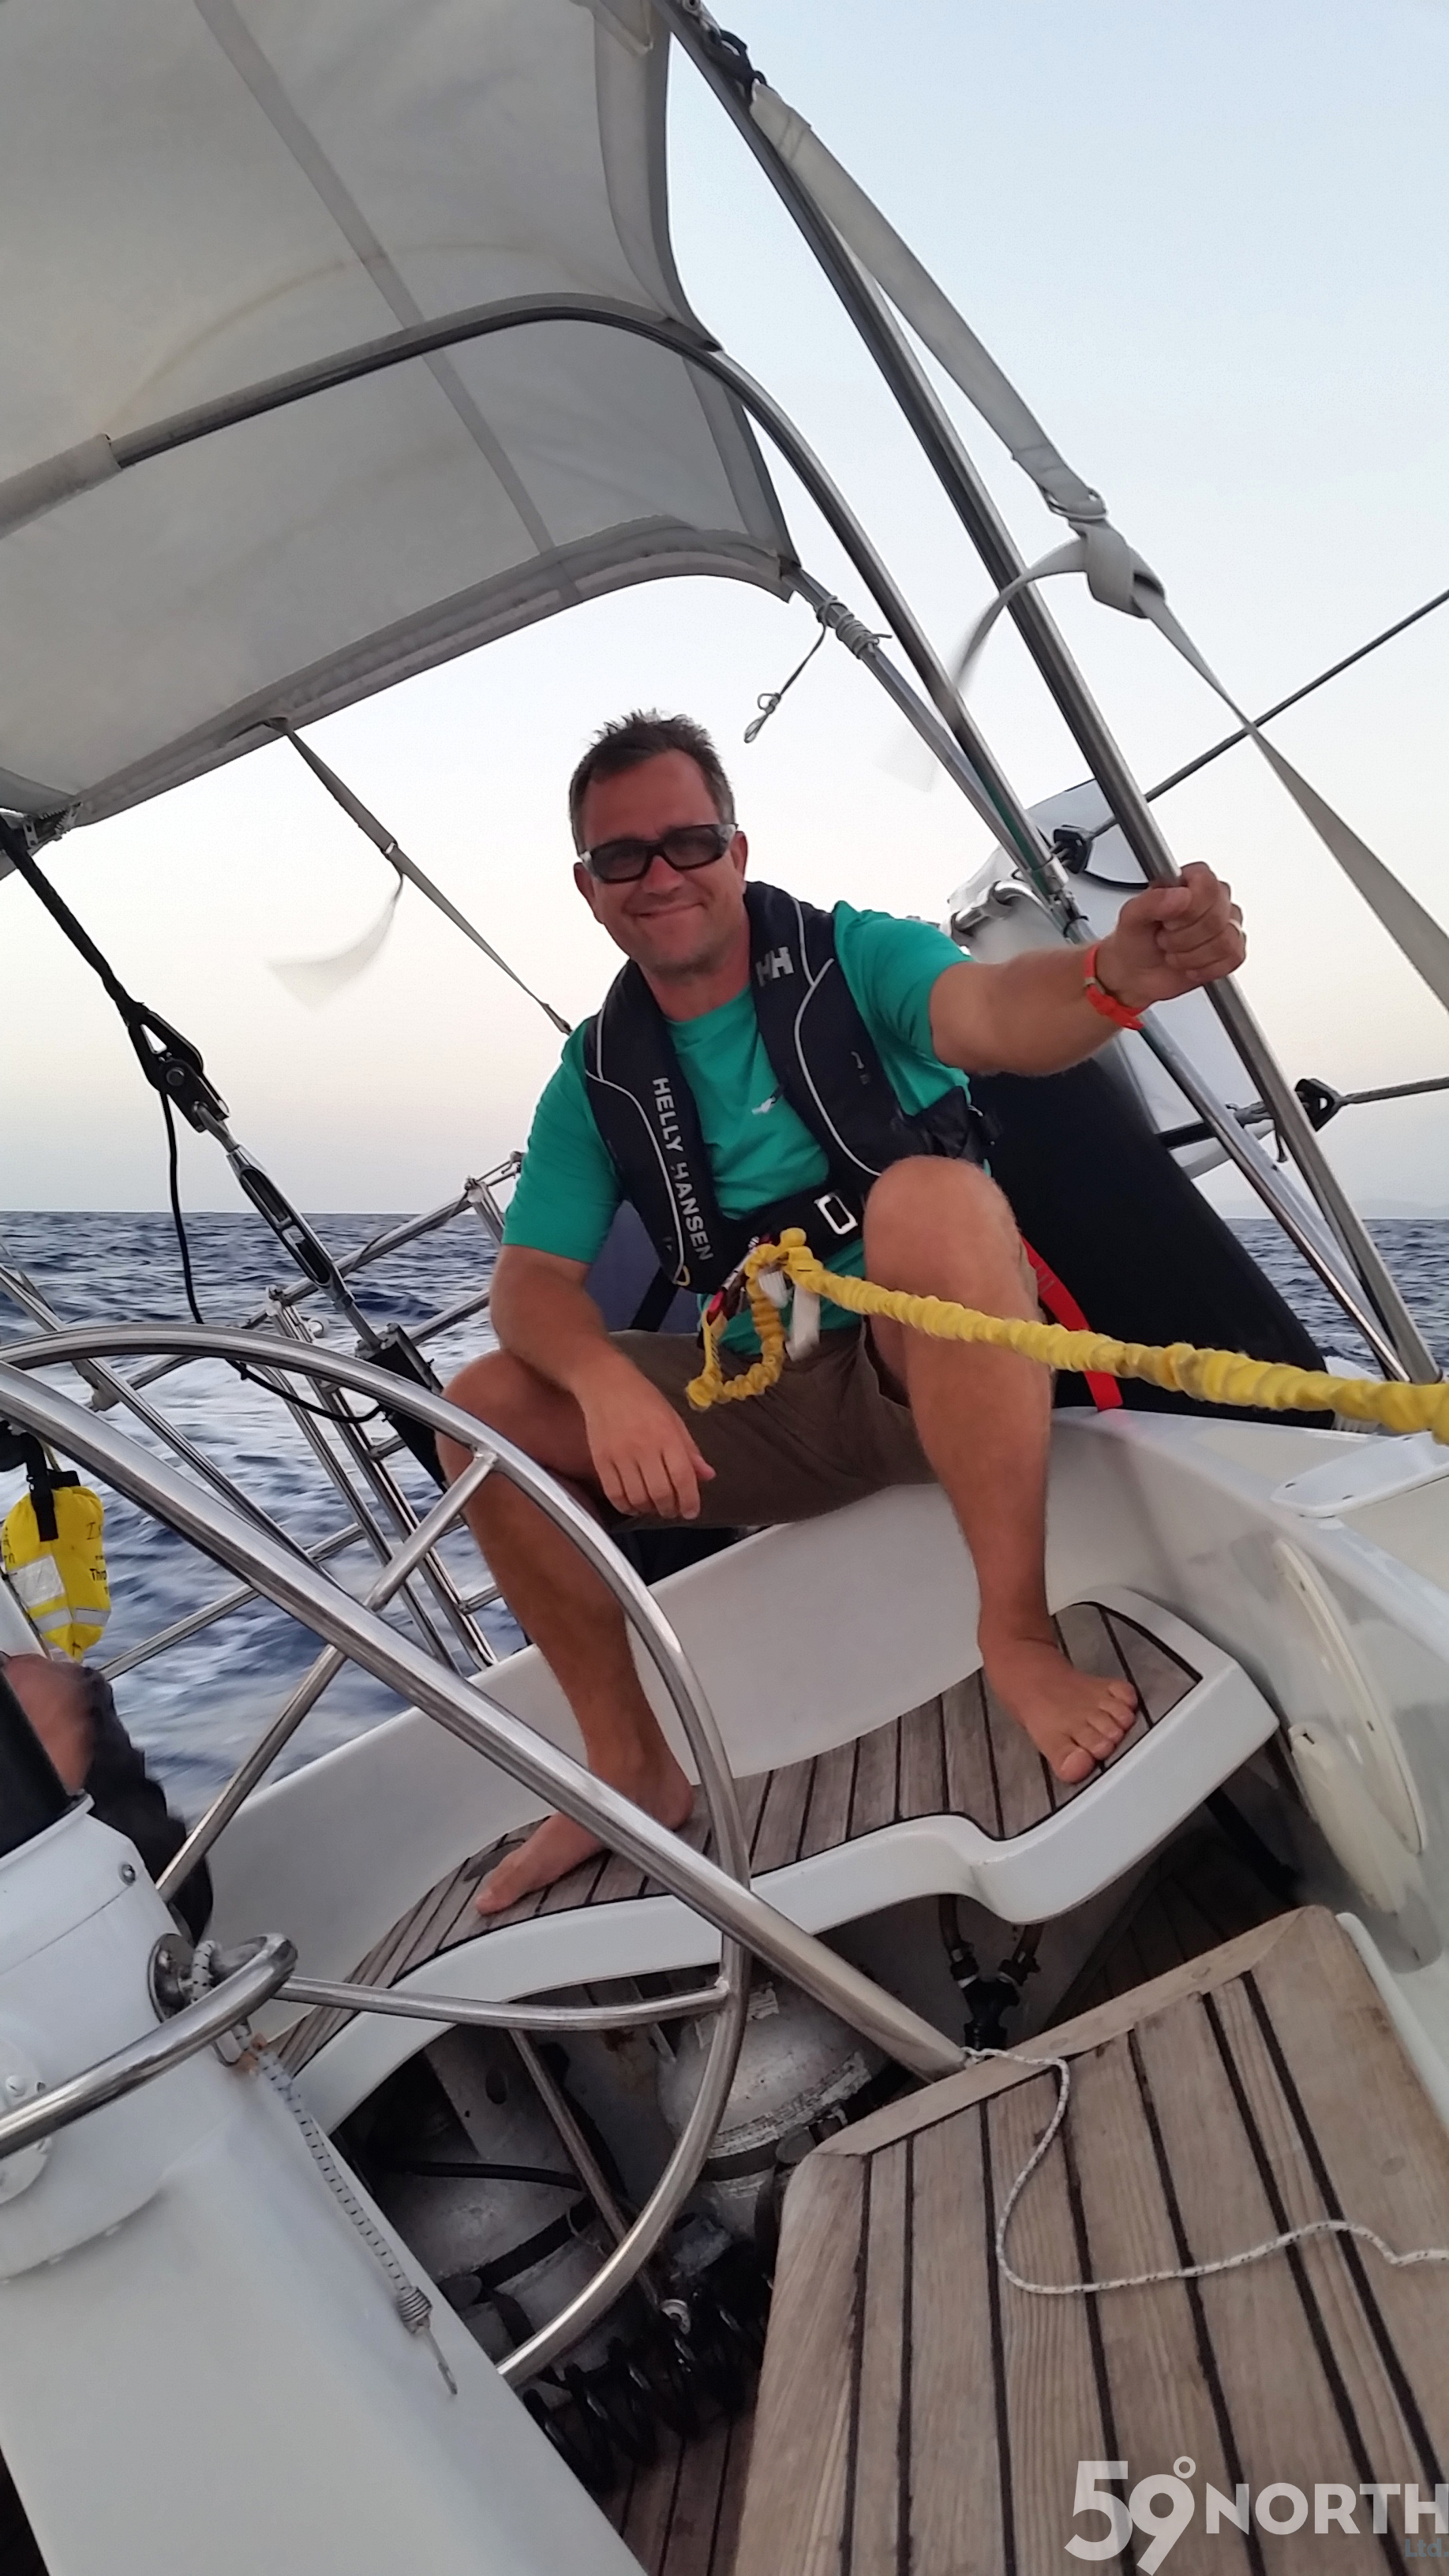 Greg enjoying the sail!